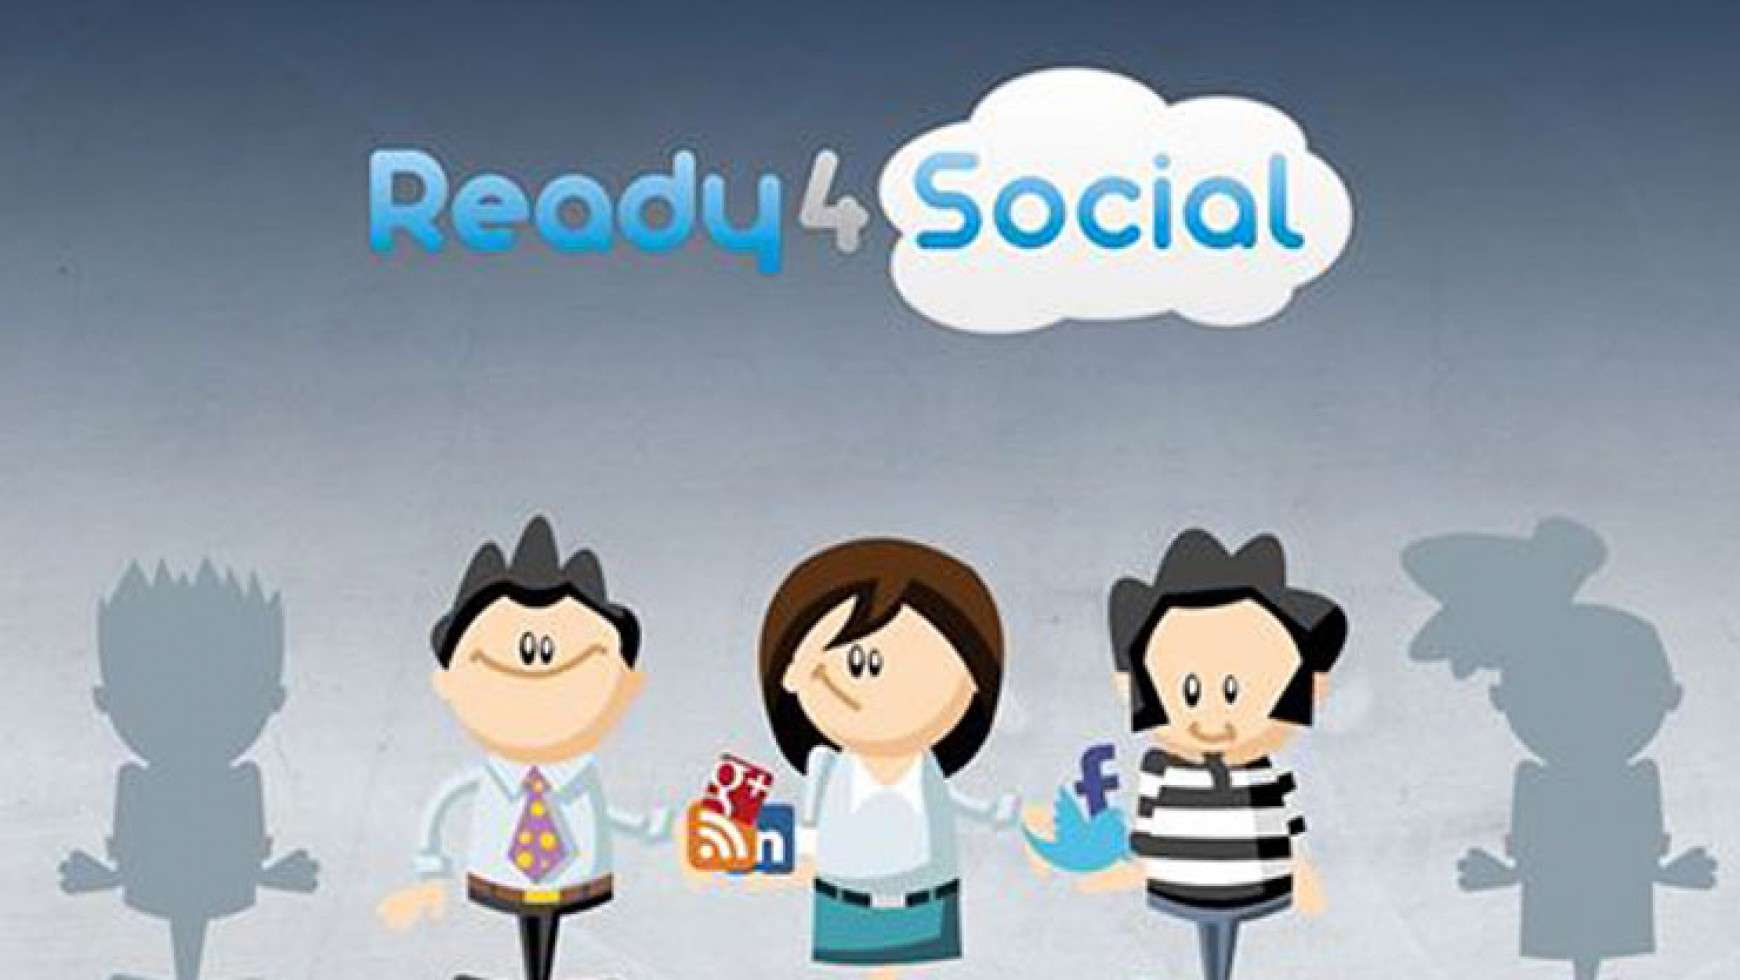 Ready4Social: la navaja suiza y content curator para los Community Manager